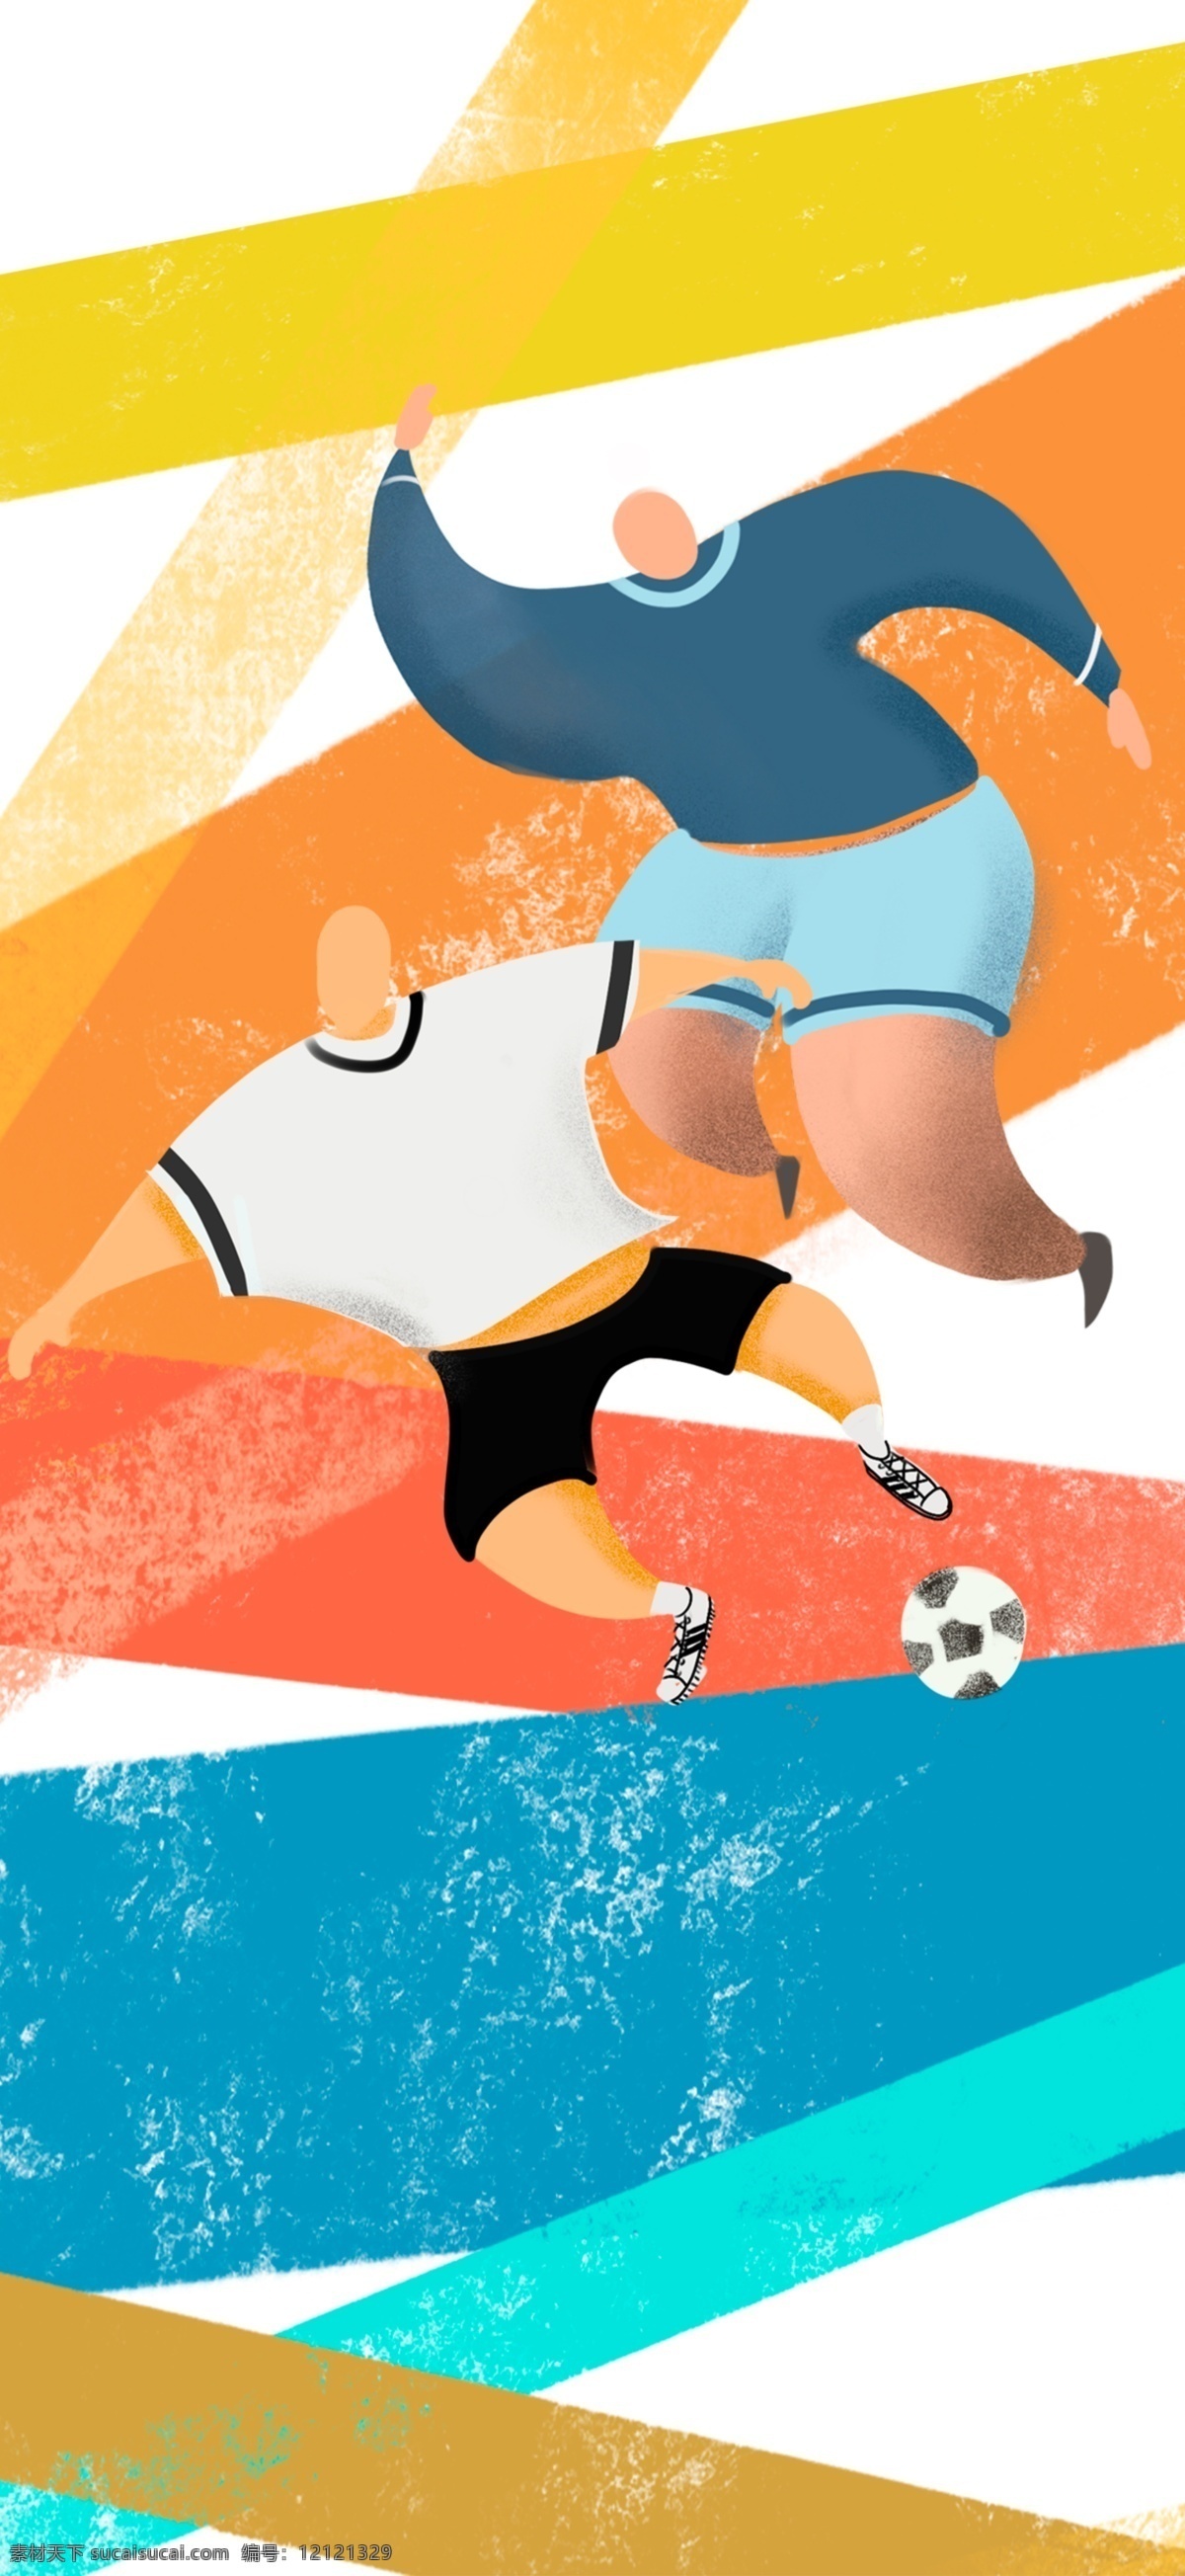 原创 世界杯 夏日 激情 足球 插画 运动 健身 锻炼 争夺 对战 奔跑